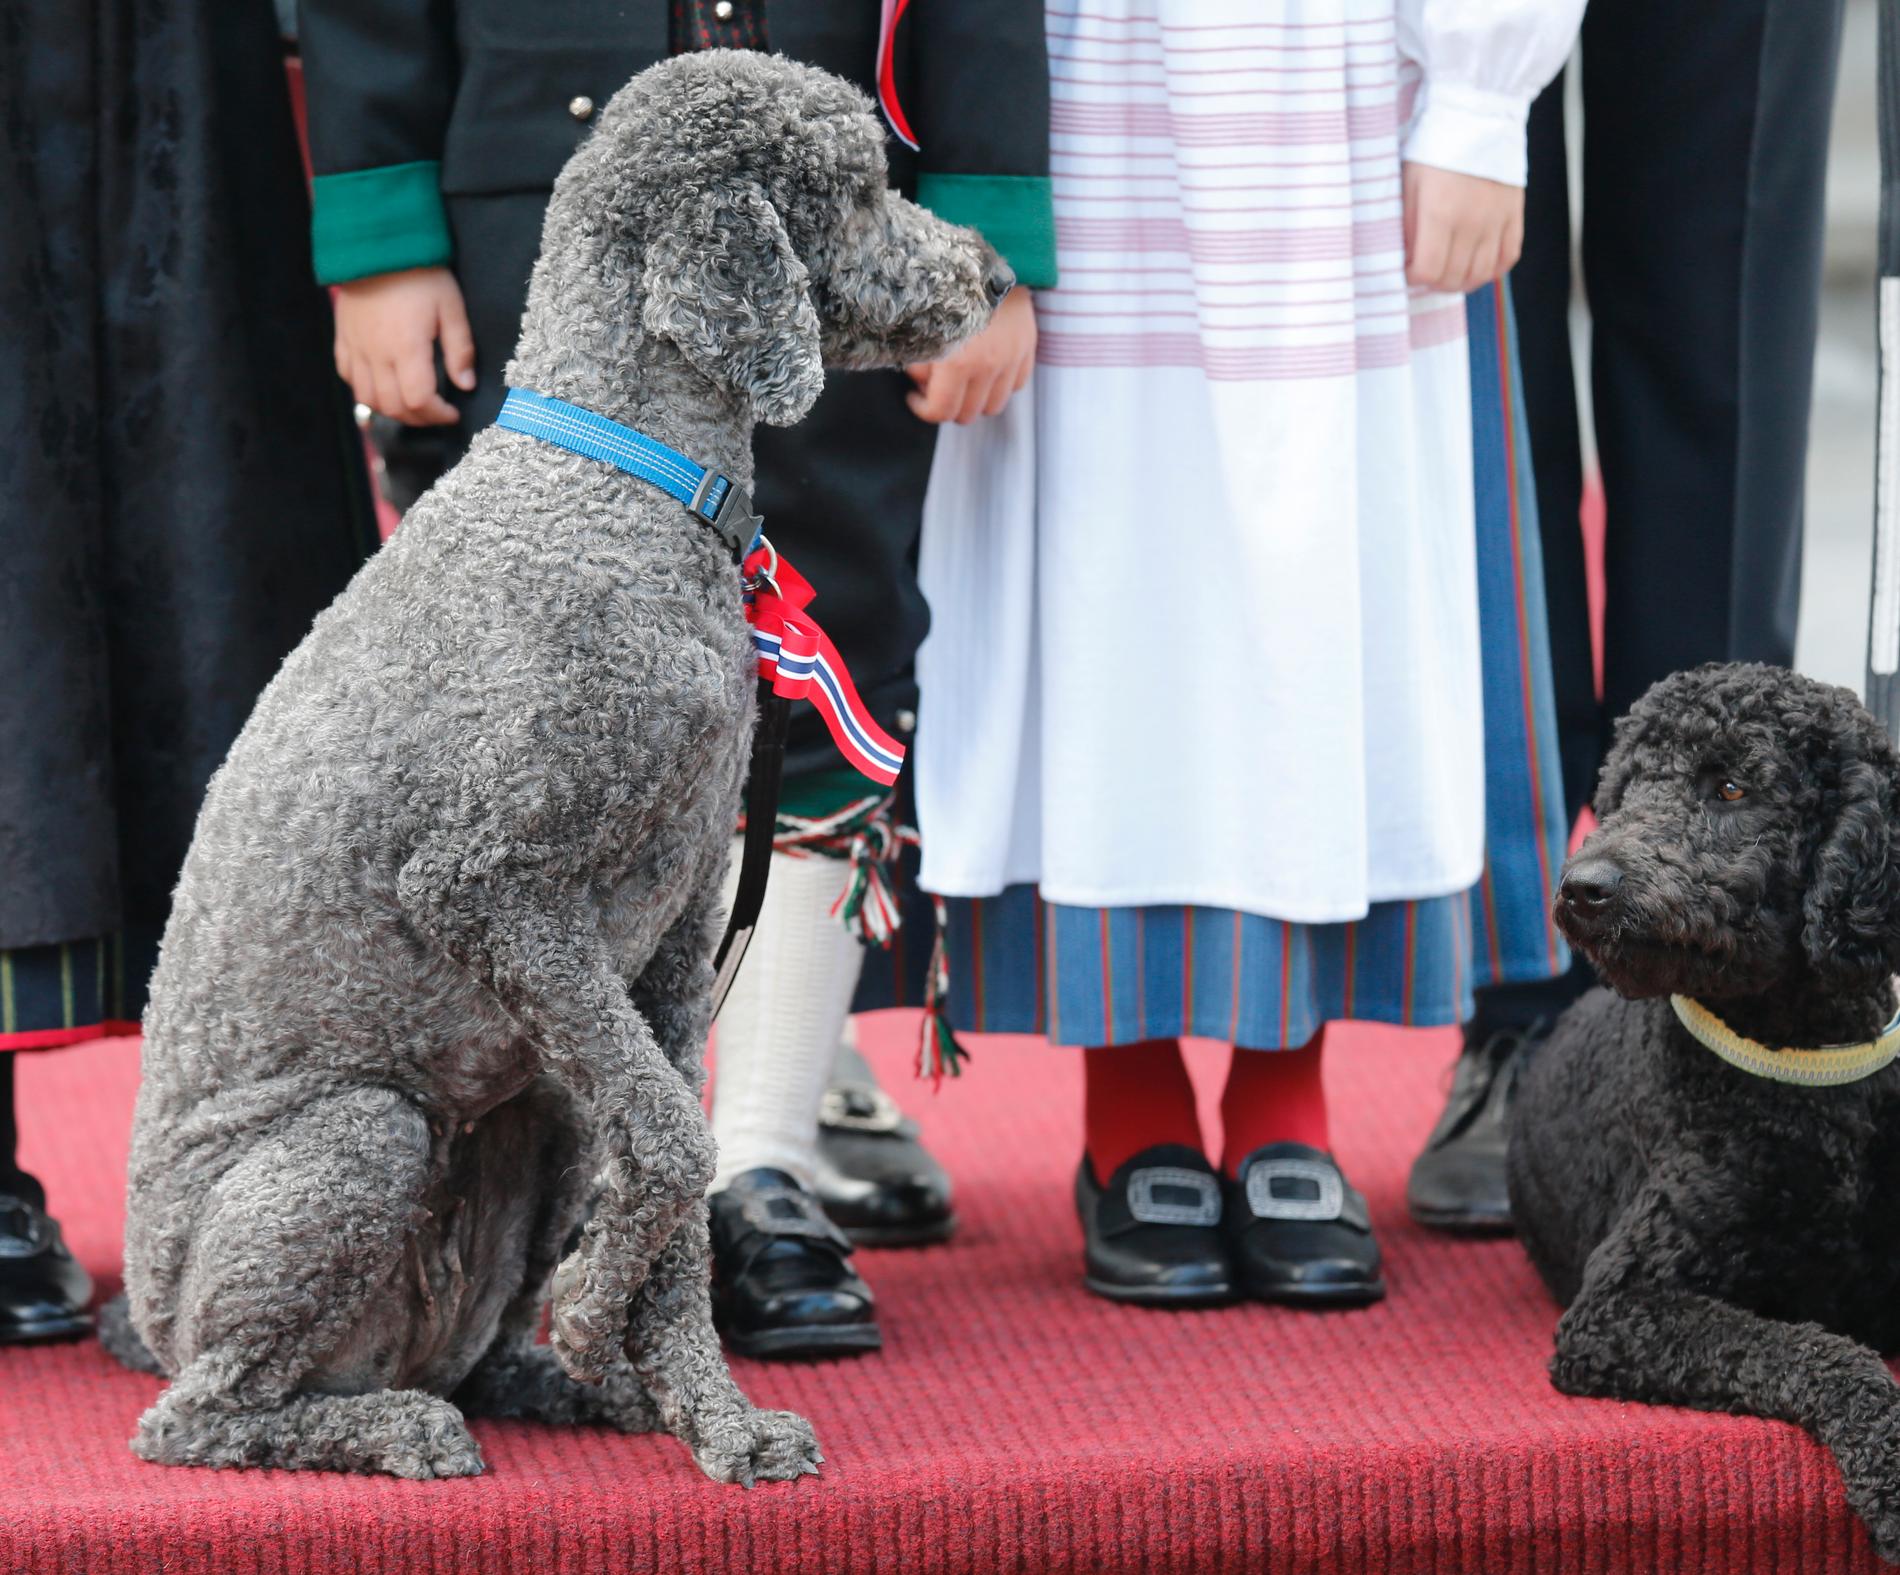 Fun fact: Den ene hunden til kronprinsfamilien (til venstre) heter Milly Kakao.